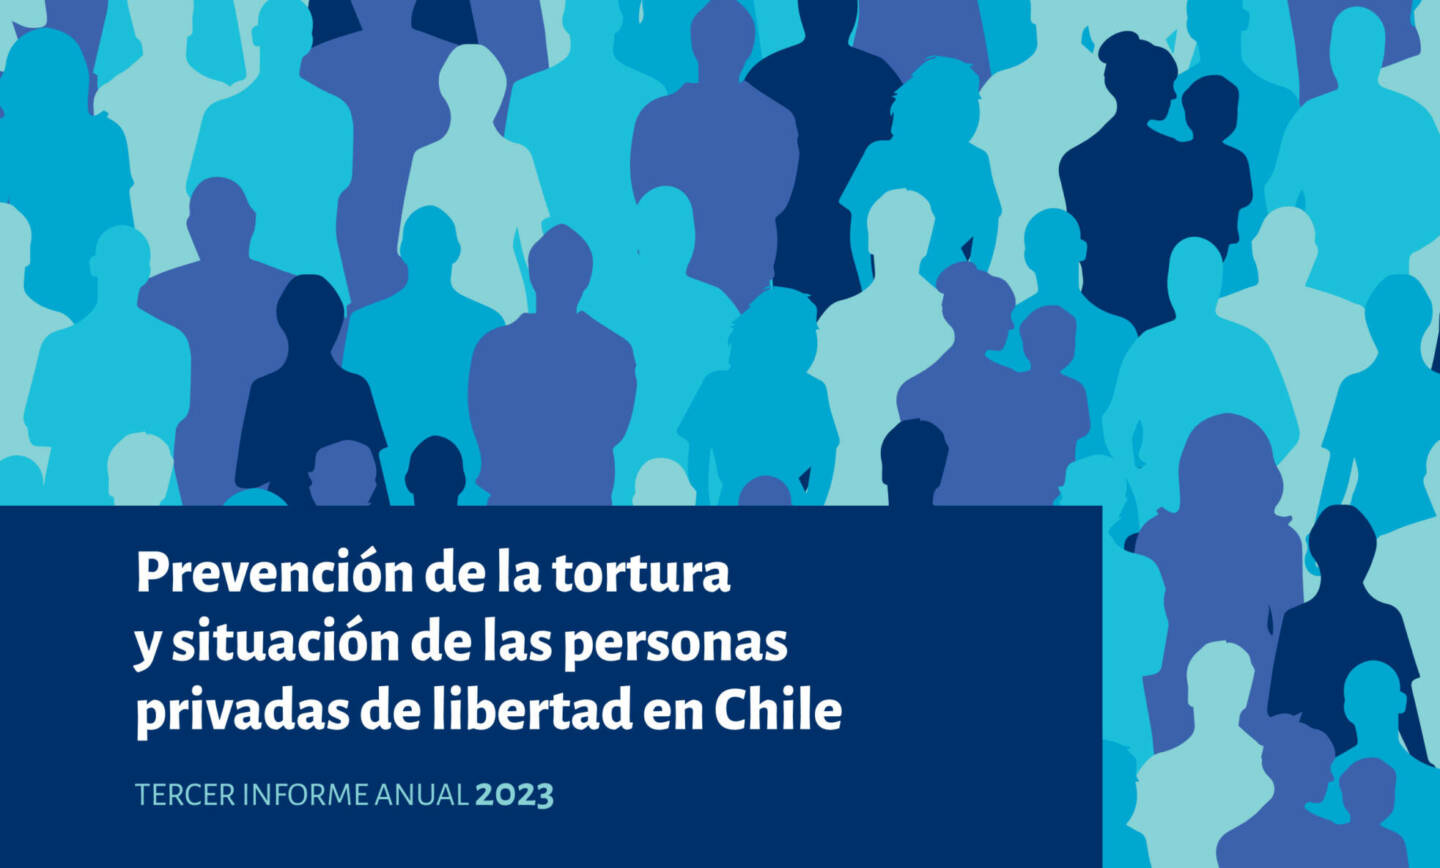 Comité para la Prevención de la Tortura entrega Informe Anual que recoge hallazgos y recomendaciones del monitoreo realizados entre el año 2022 y 2023